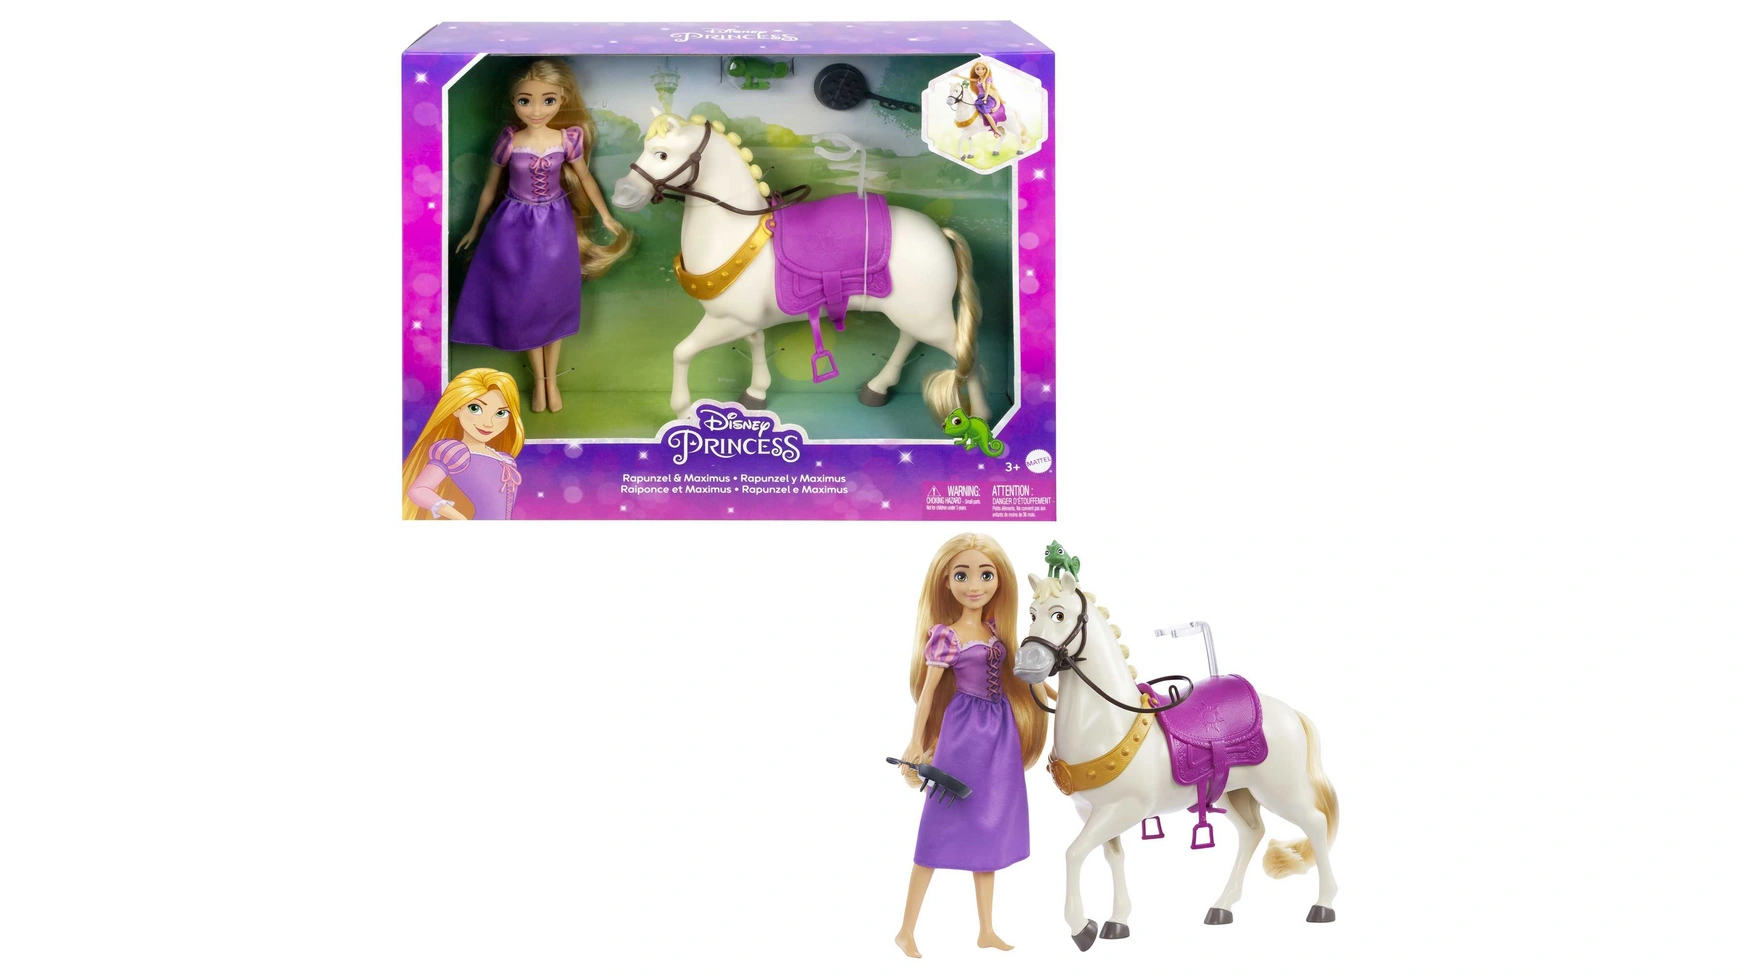 игра прическа принцессы диснея рапунцель mattel Принцесса диснея рапунцель и максимус Mattel